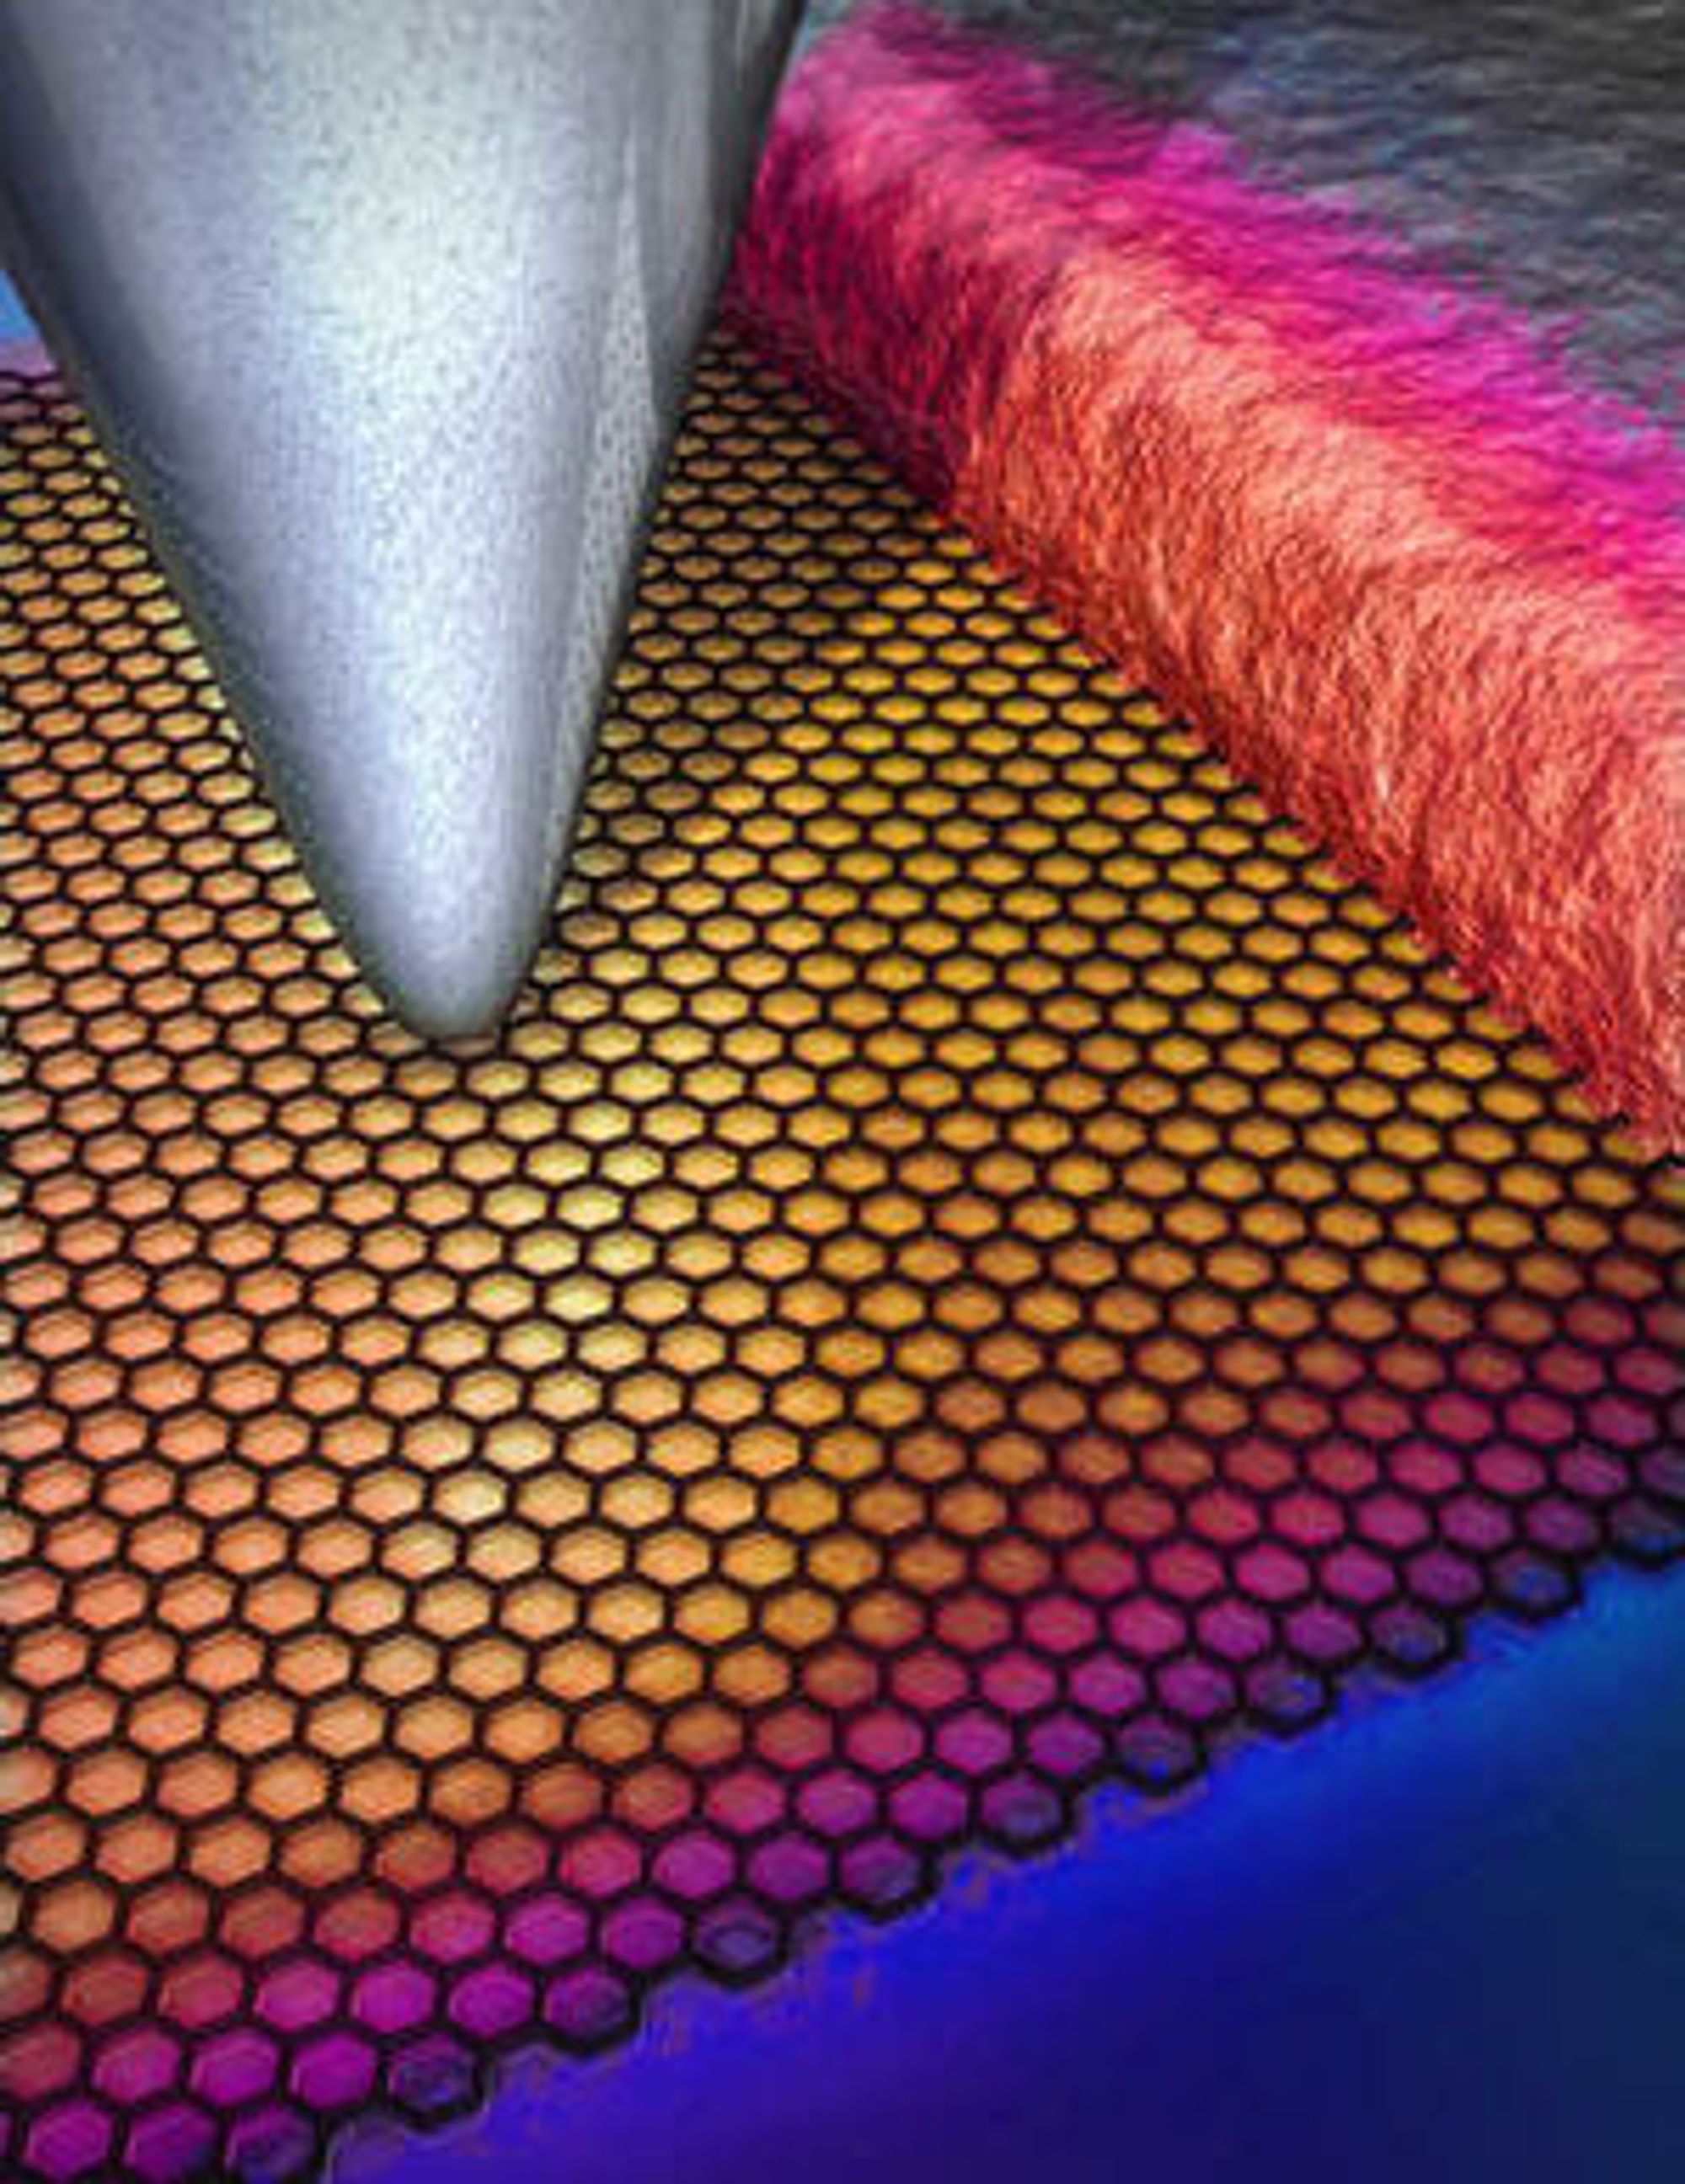 Tuppen til et atomkraftmikroskop skanner overflaten til en grafen-metall-kontakt for å måle temperaturen i punkter med en avstand på 10 nanometer og med en nøyaktighet på 250 mK. I bildet representeres temperaturdataene av ulike farger.